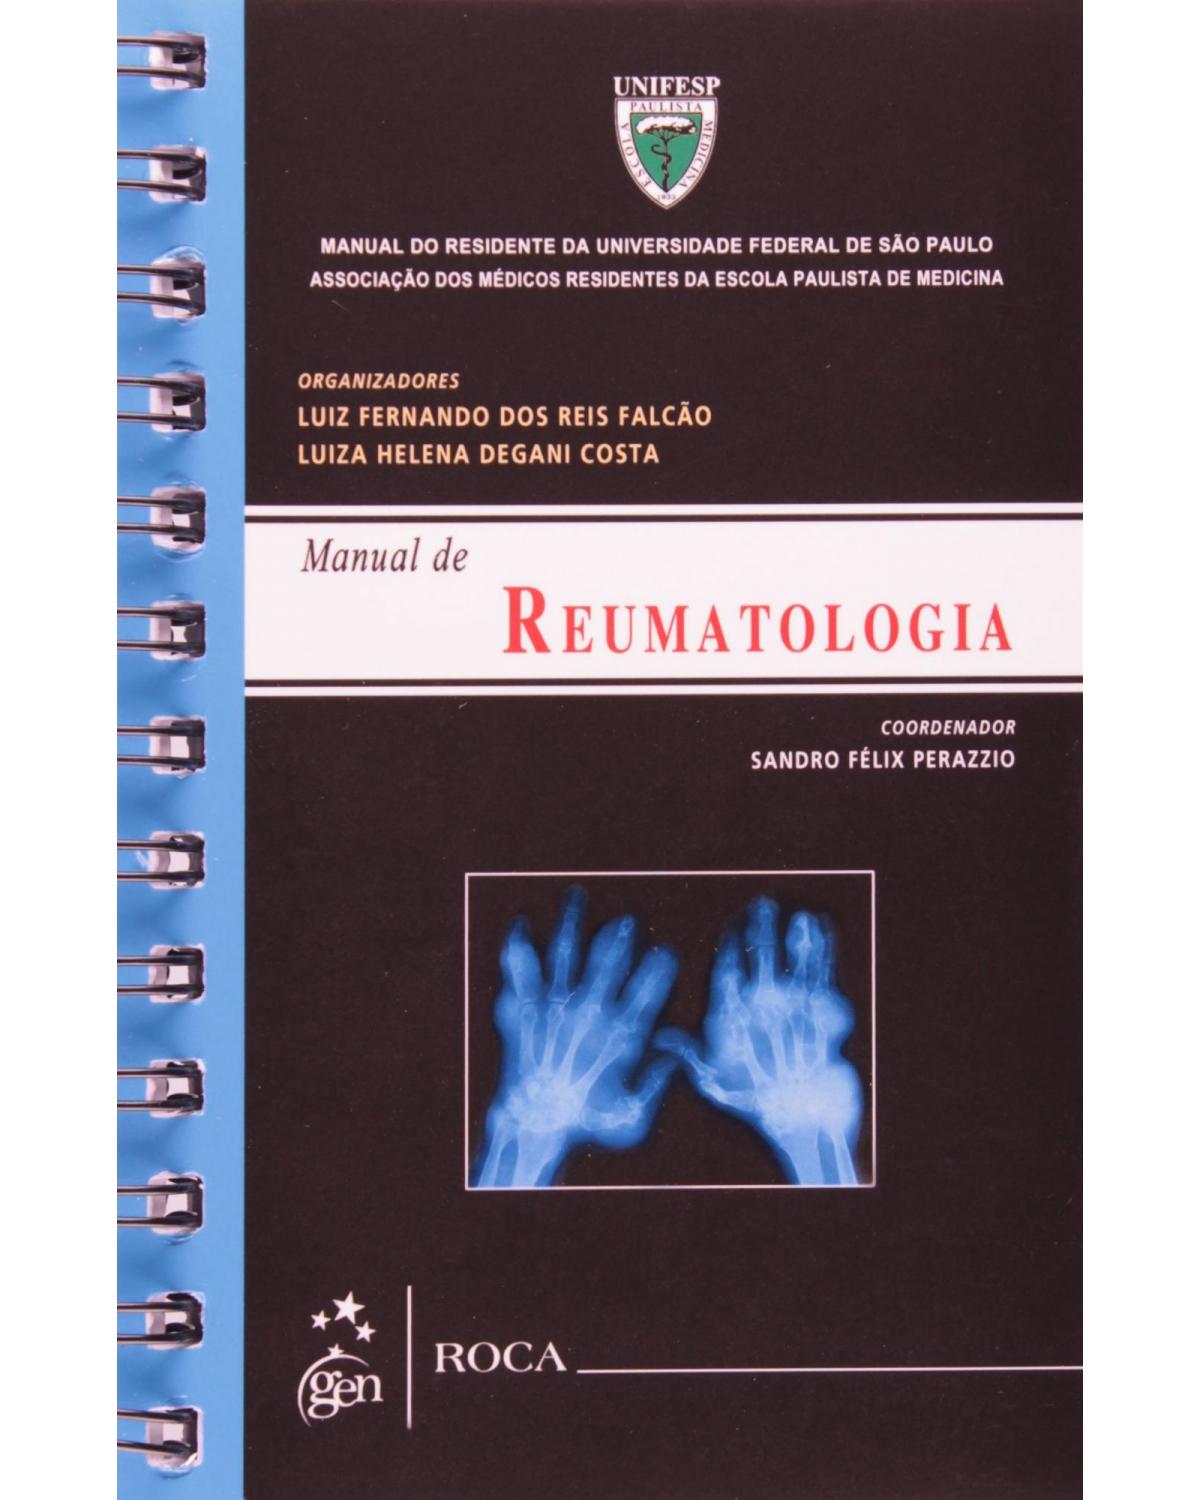 Manual de reumatologia - Manual do residente da Universidade Federal de São Paulo (UNIFESP) - 1ª Edição | 2012